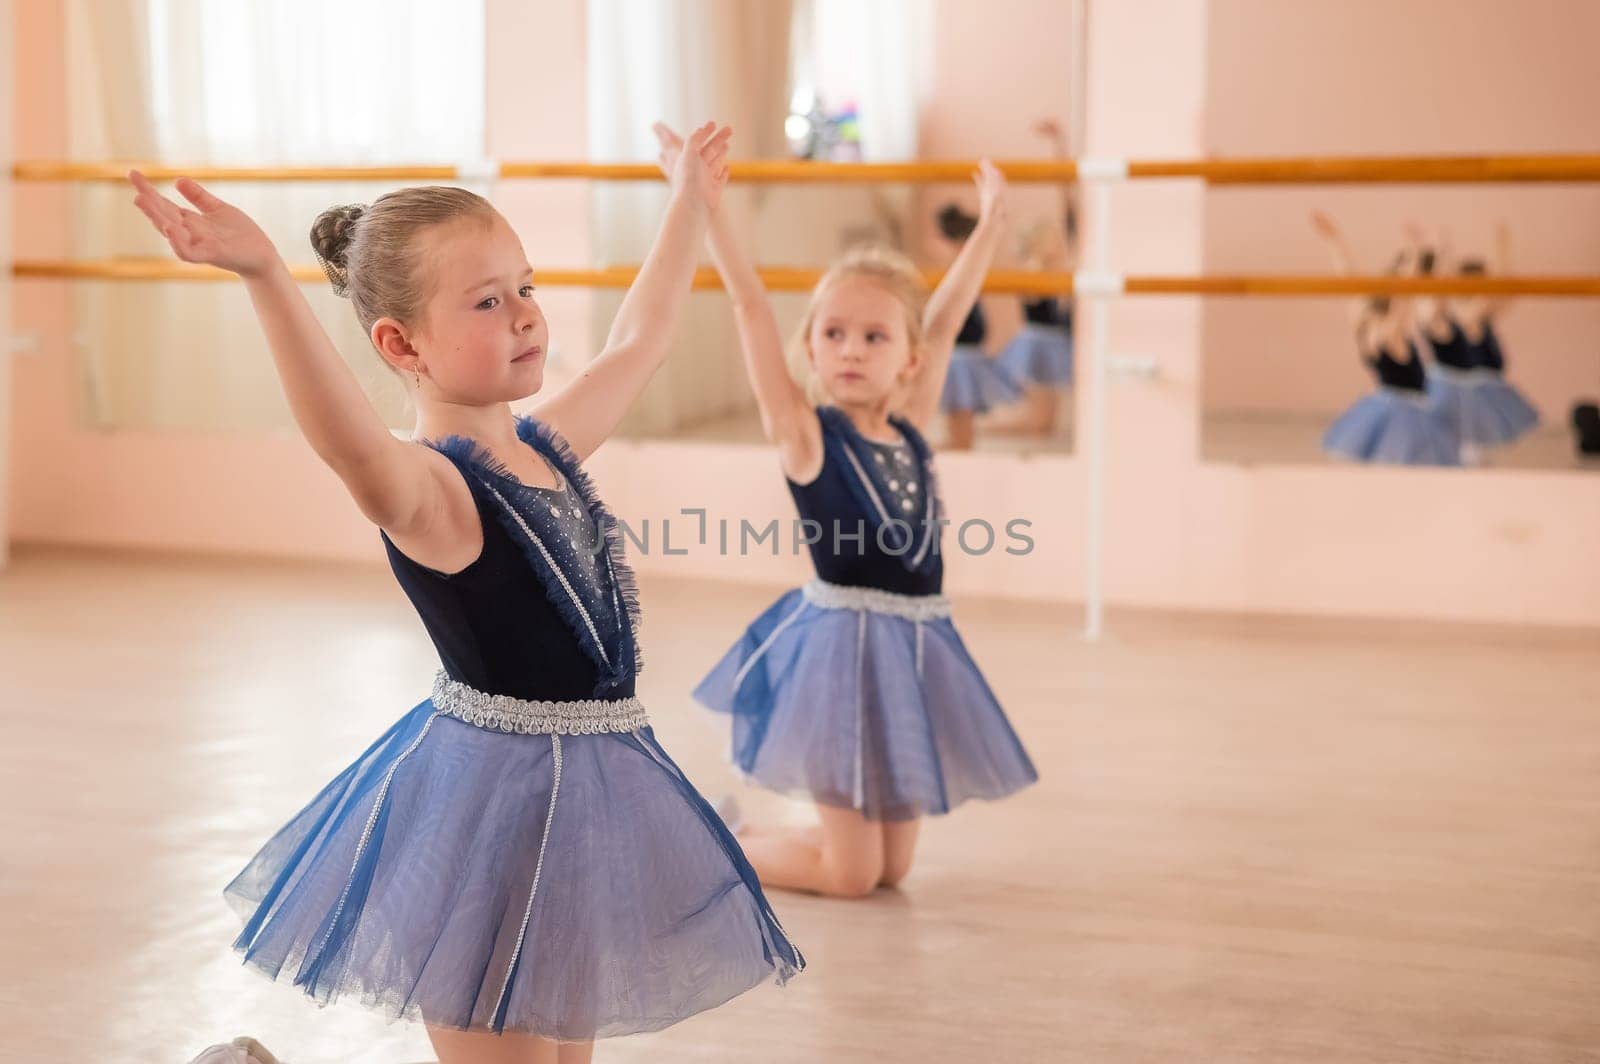 Little ballerinas perform at a dance school